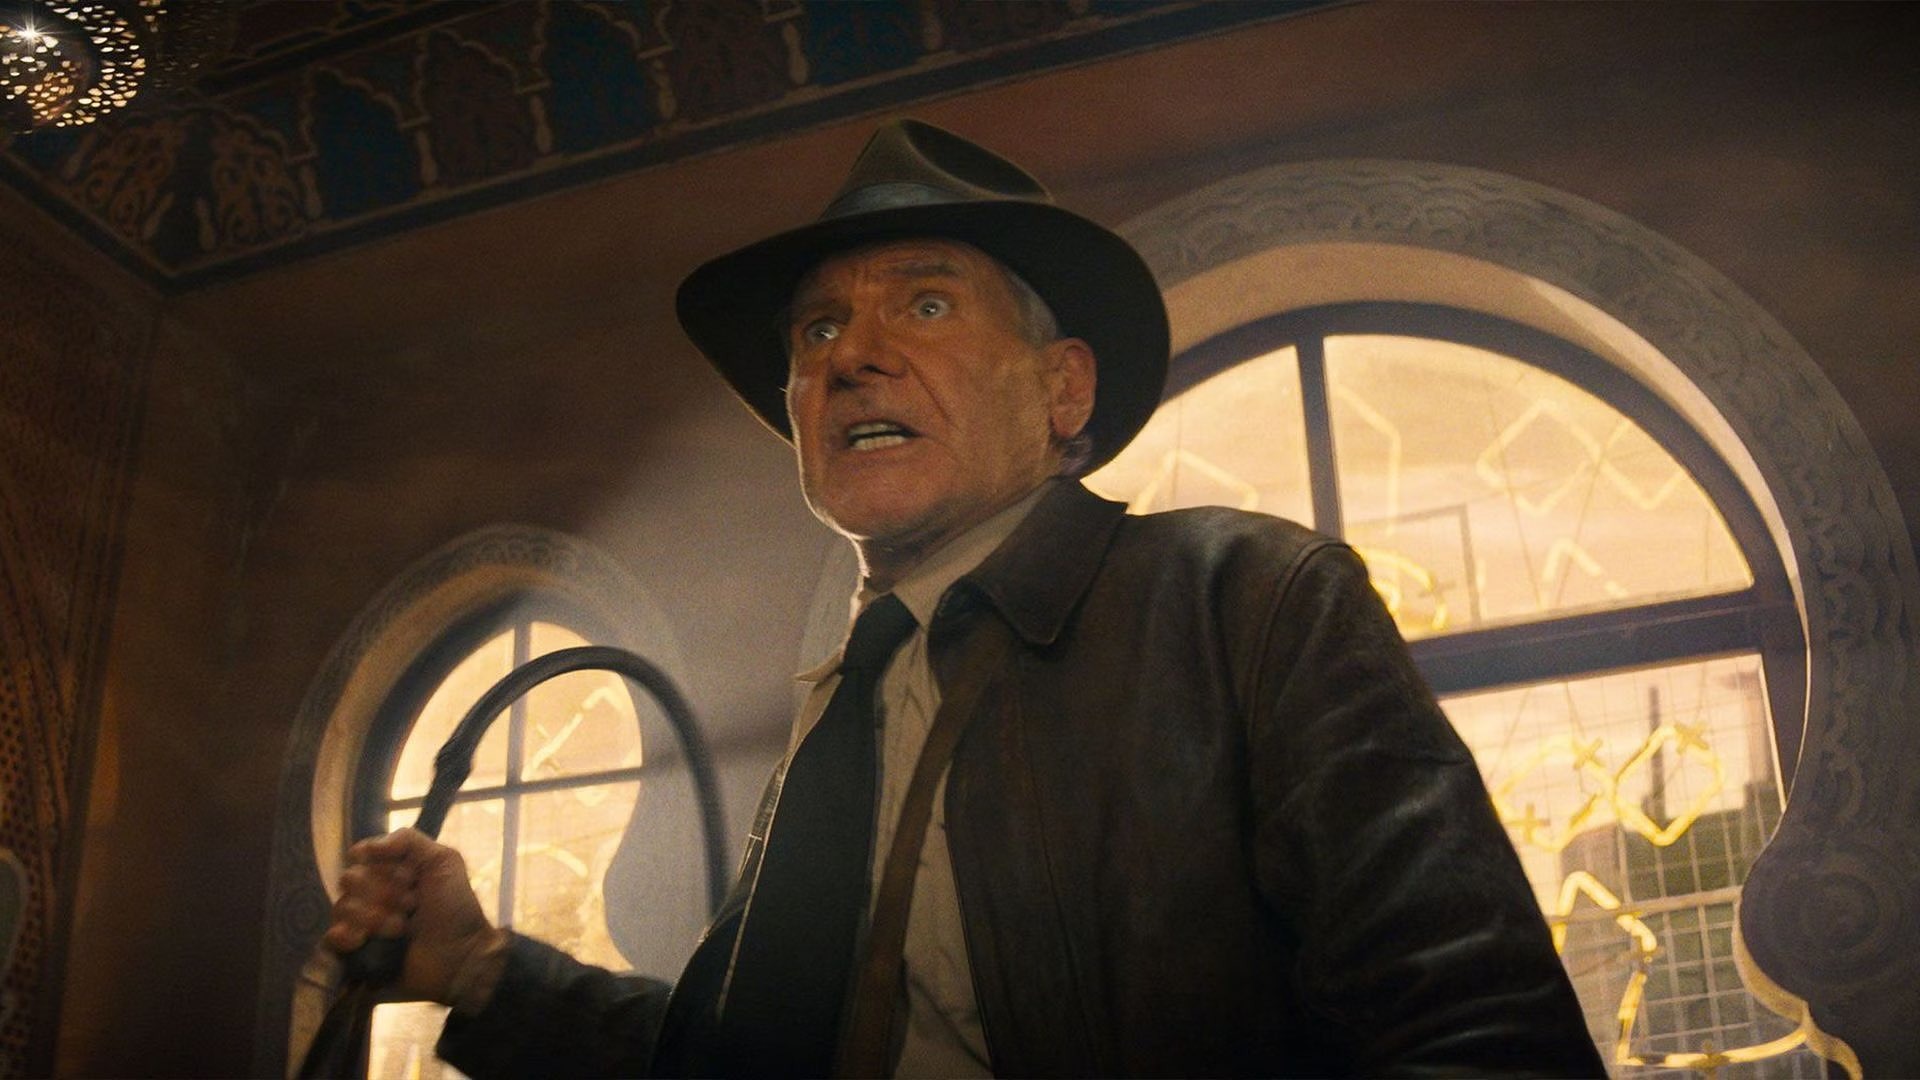 Cena do filme Indiana Jones 5